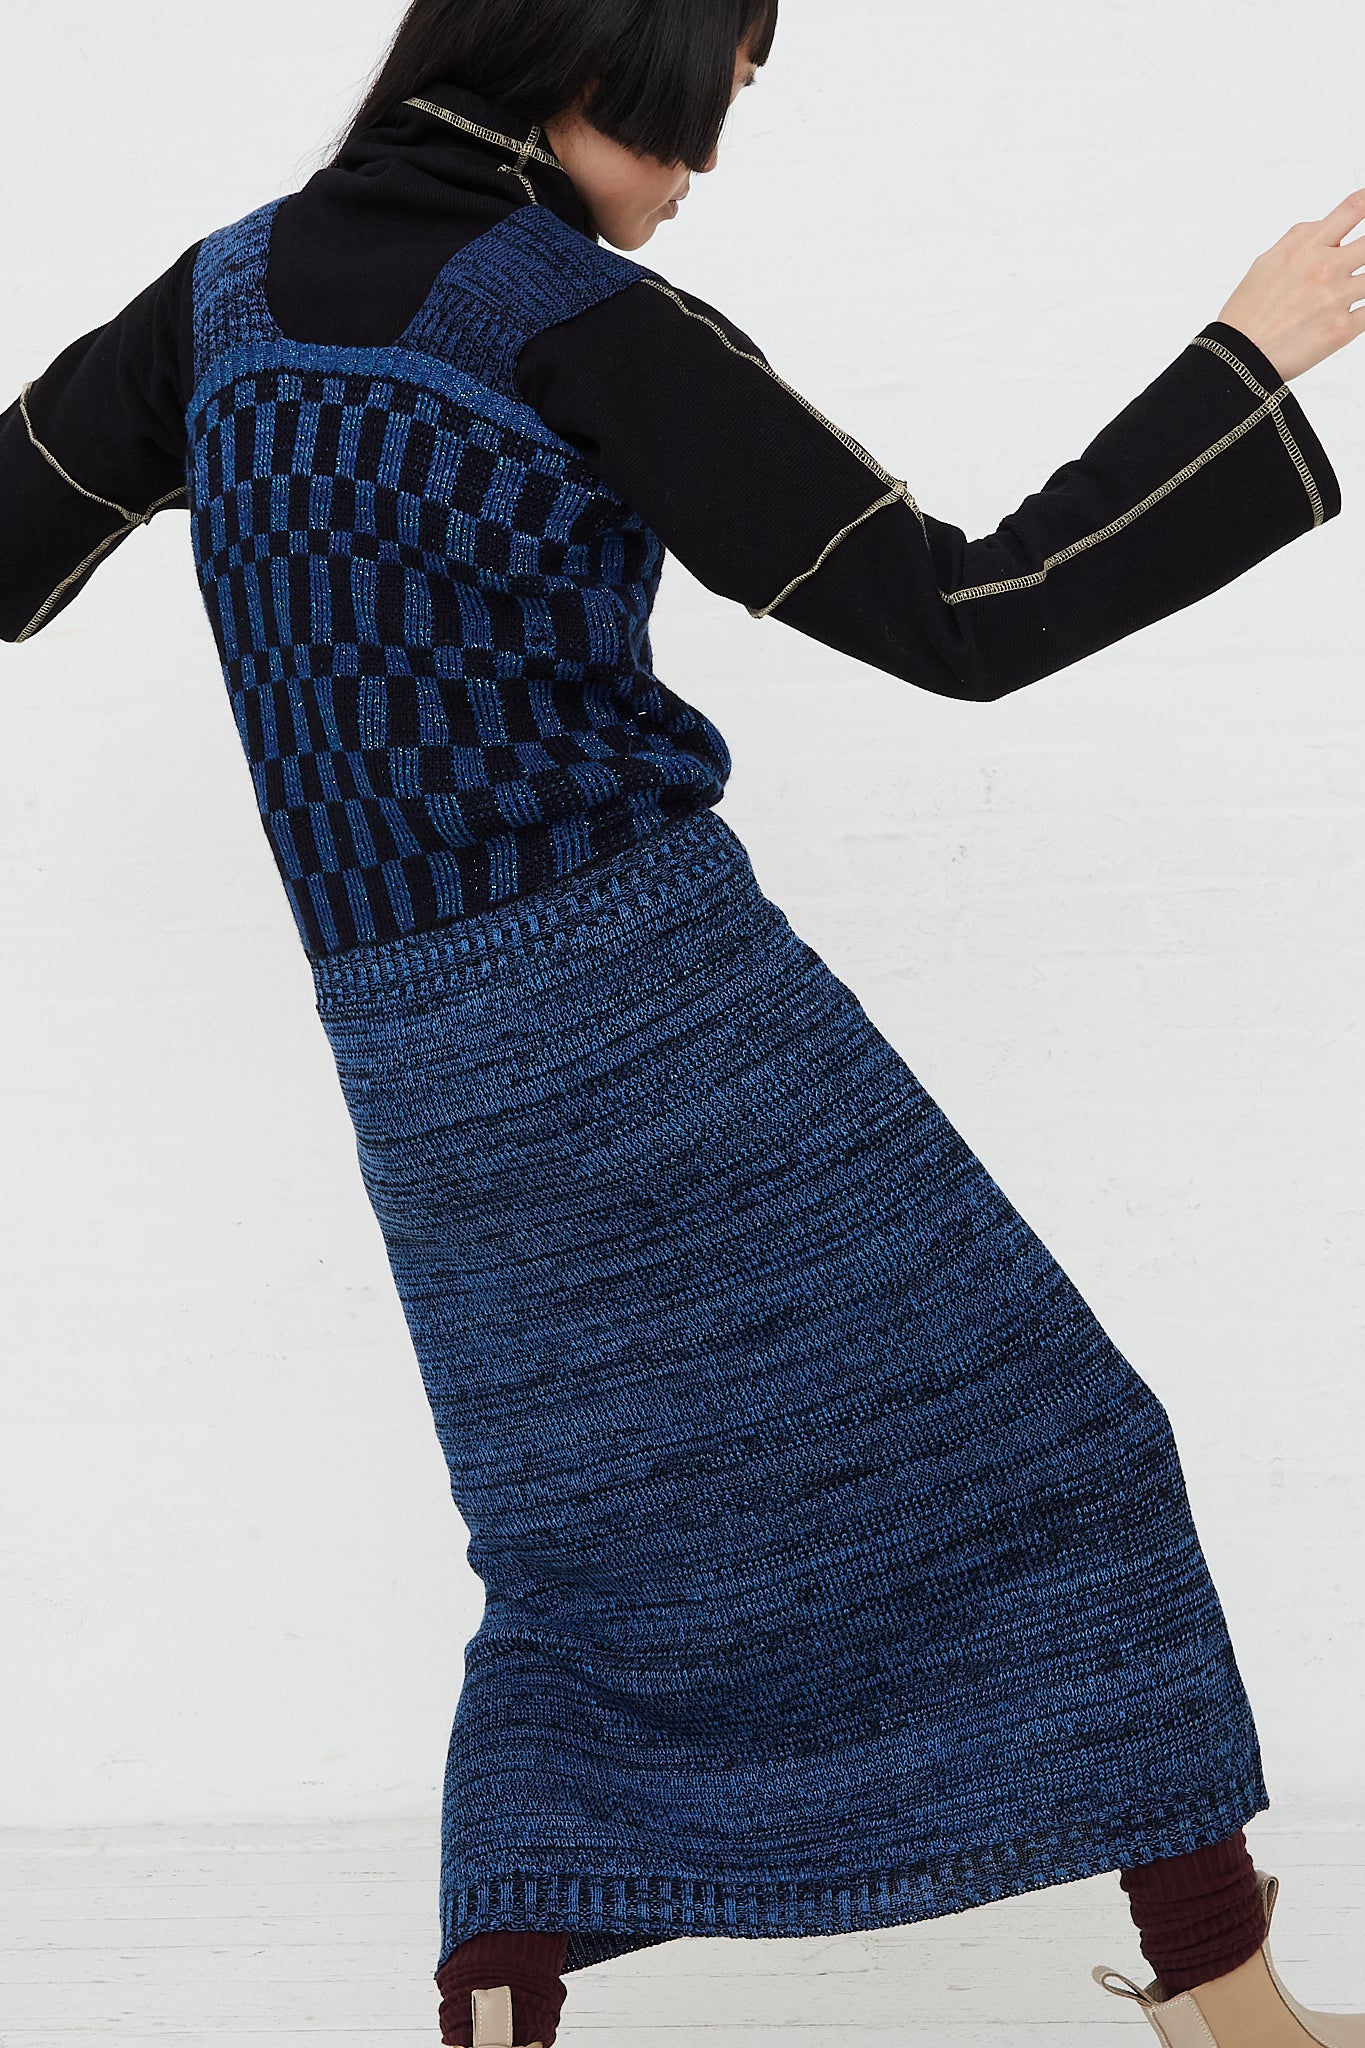 A model in an Intensity Optic Dress in Blue is dancing.